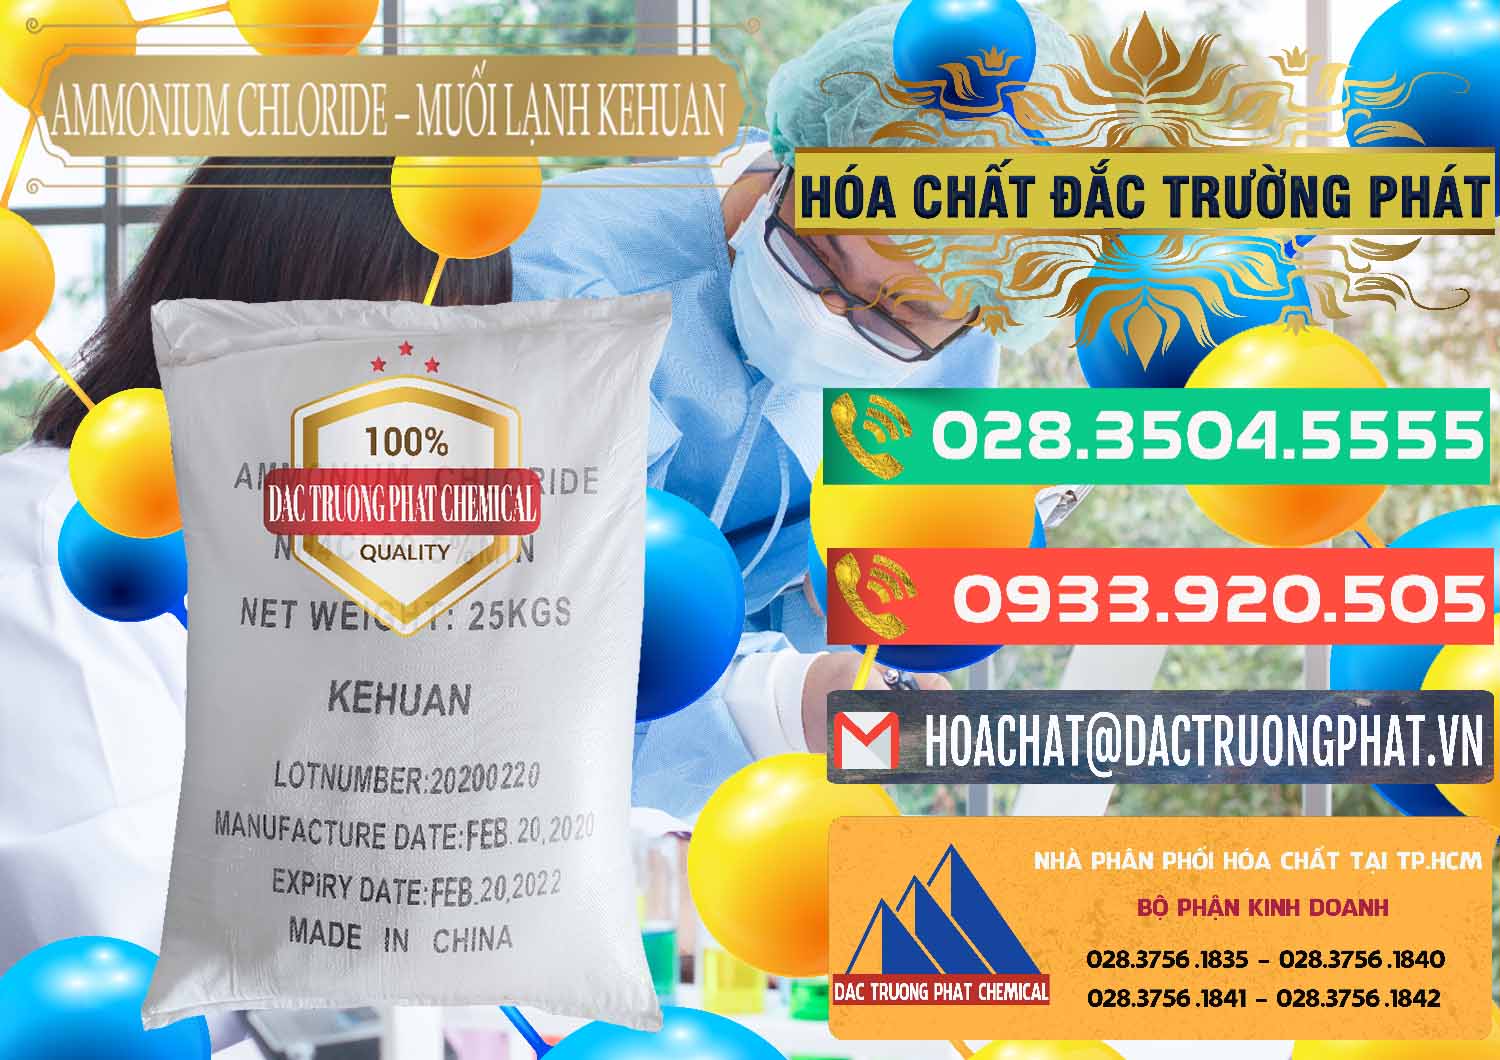 Chuyên kinh doanh ( bán ) Ammonium Chloride – NH4CL Muối Lạnh Kehuan Trung Quốc China - 0022 - Nhà cung ứng & phân phối hóa chất tại TP.HCM - congtyhoachat.com.vn